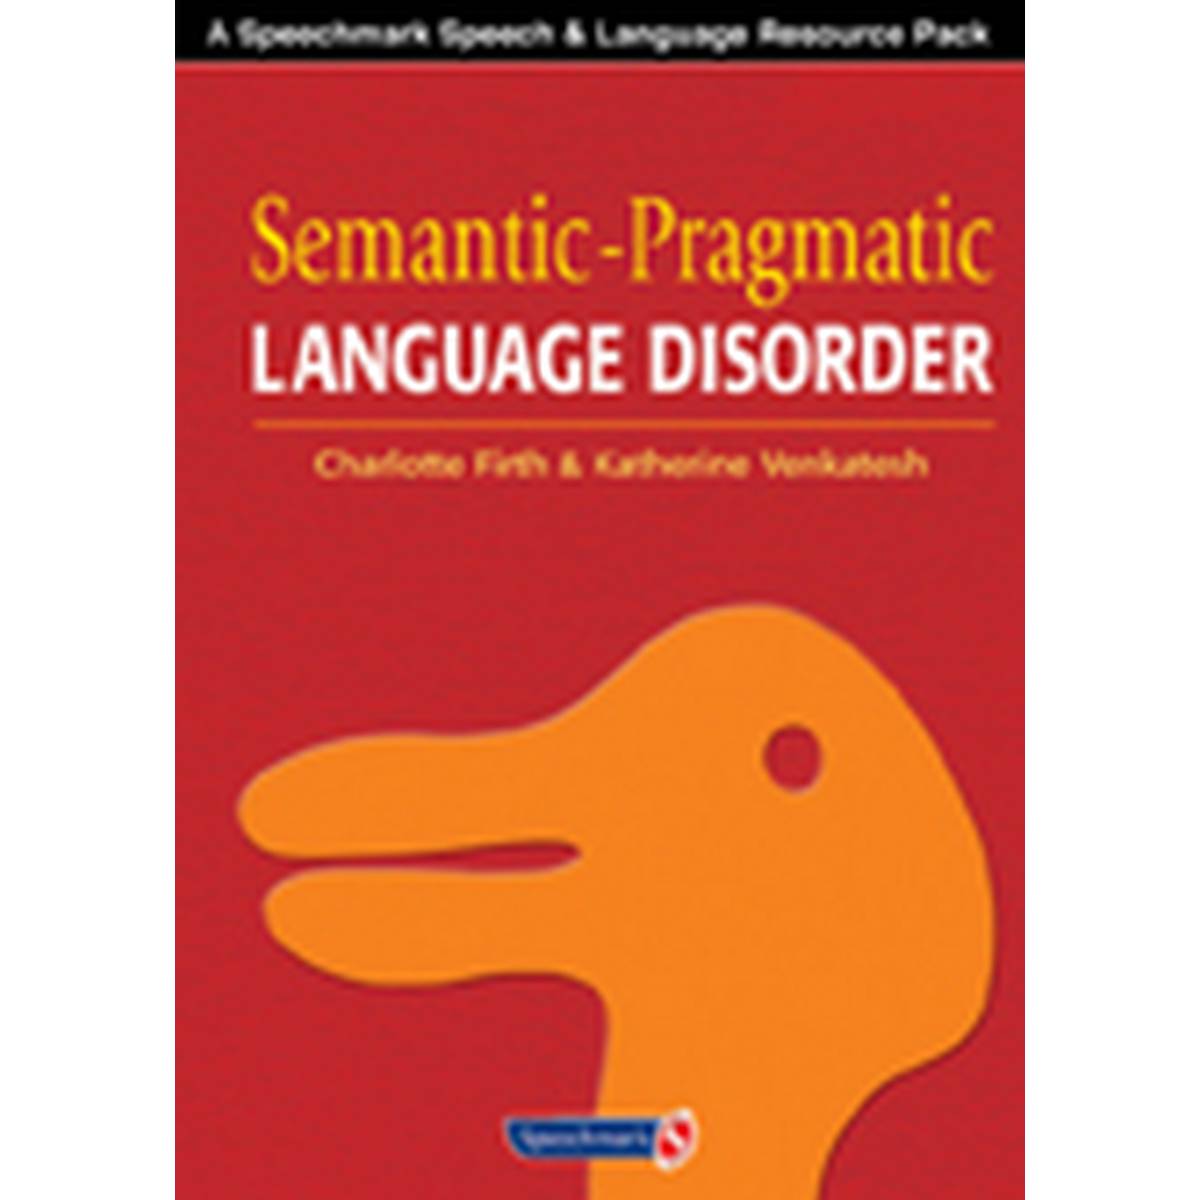 Semantic-Pragmatic Language Disorder